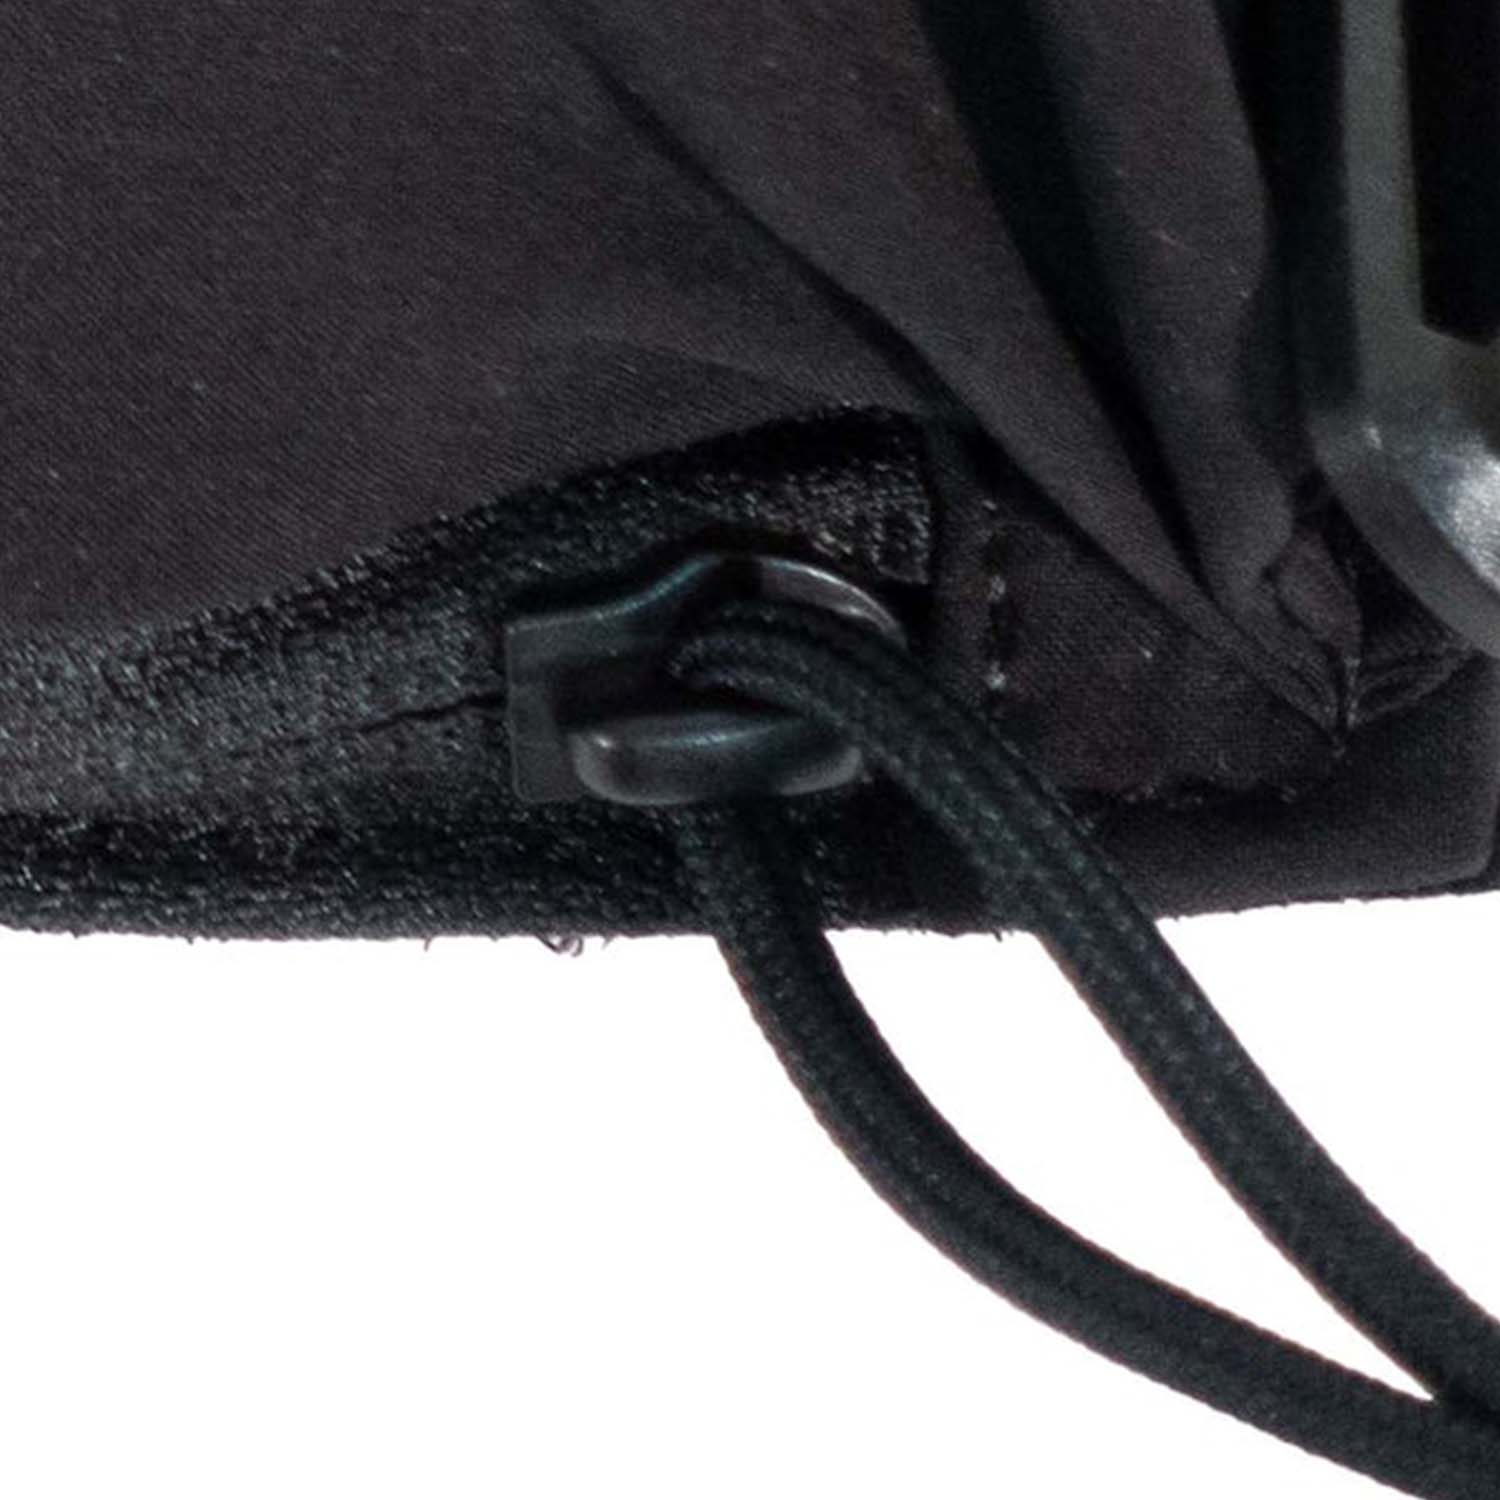 Dettaglio di una delle zip YKK cucite sulla tasca med pouch gear set di 5.11